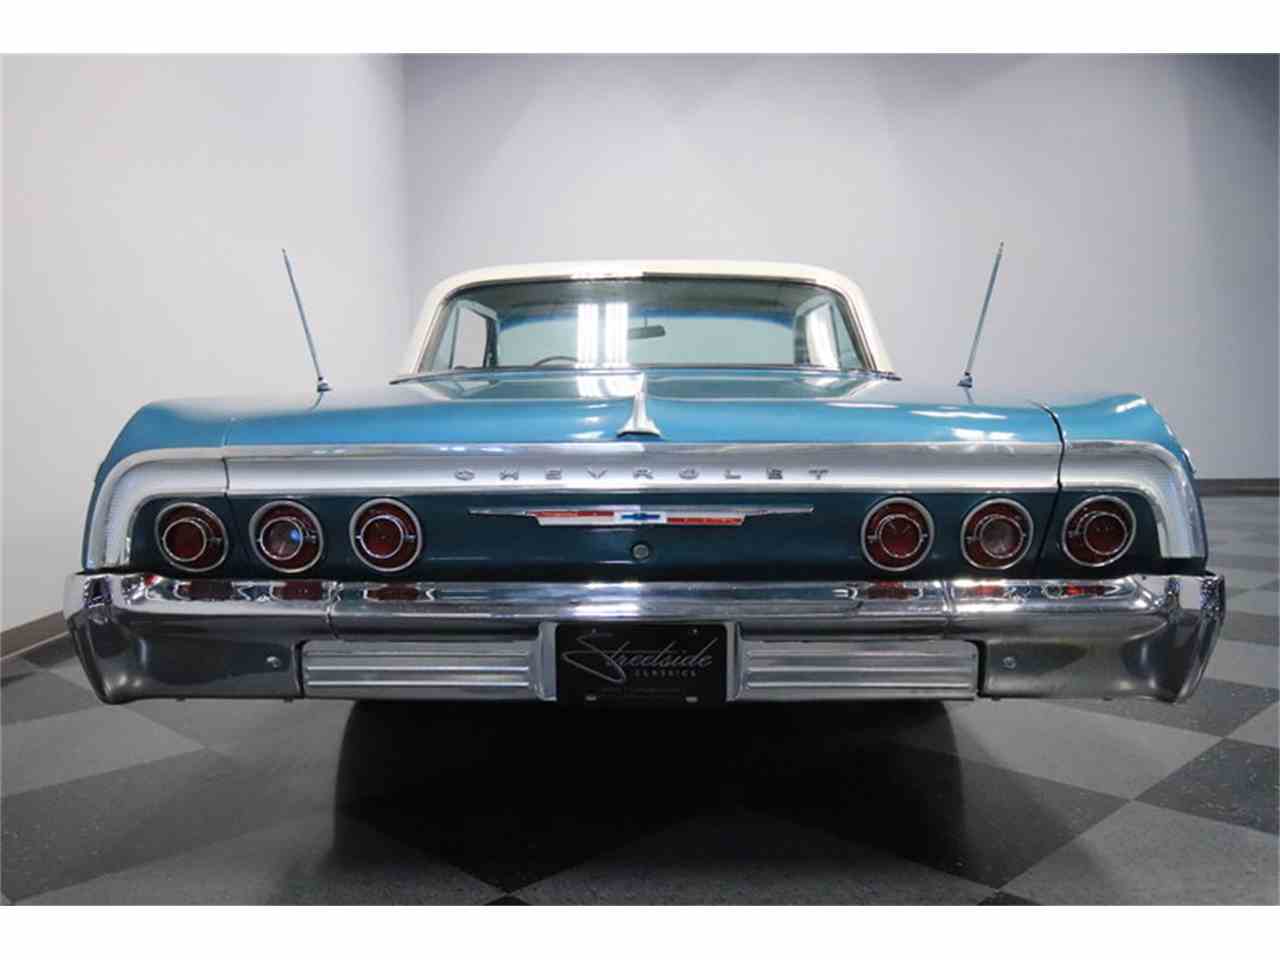 1964 Chevrolet Impala SS for Sale | ClassicCars.com | CC-1059451